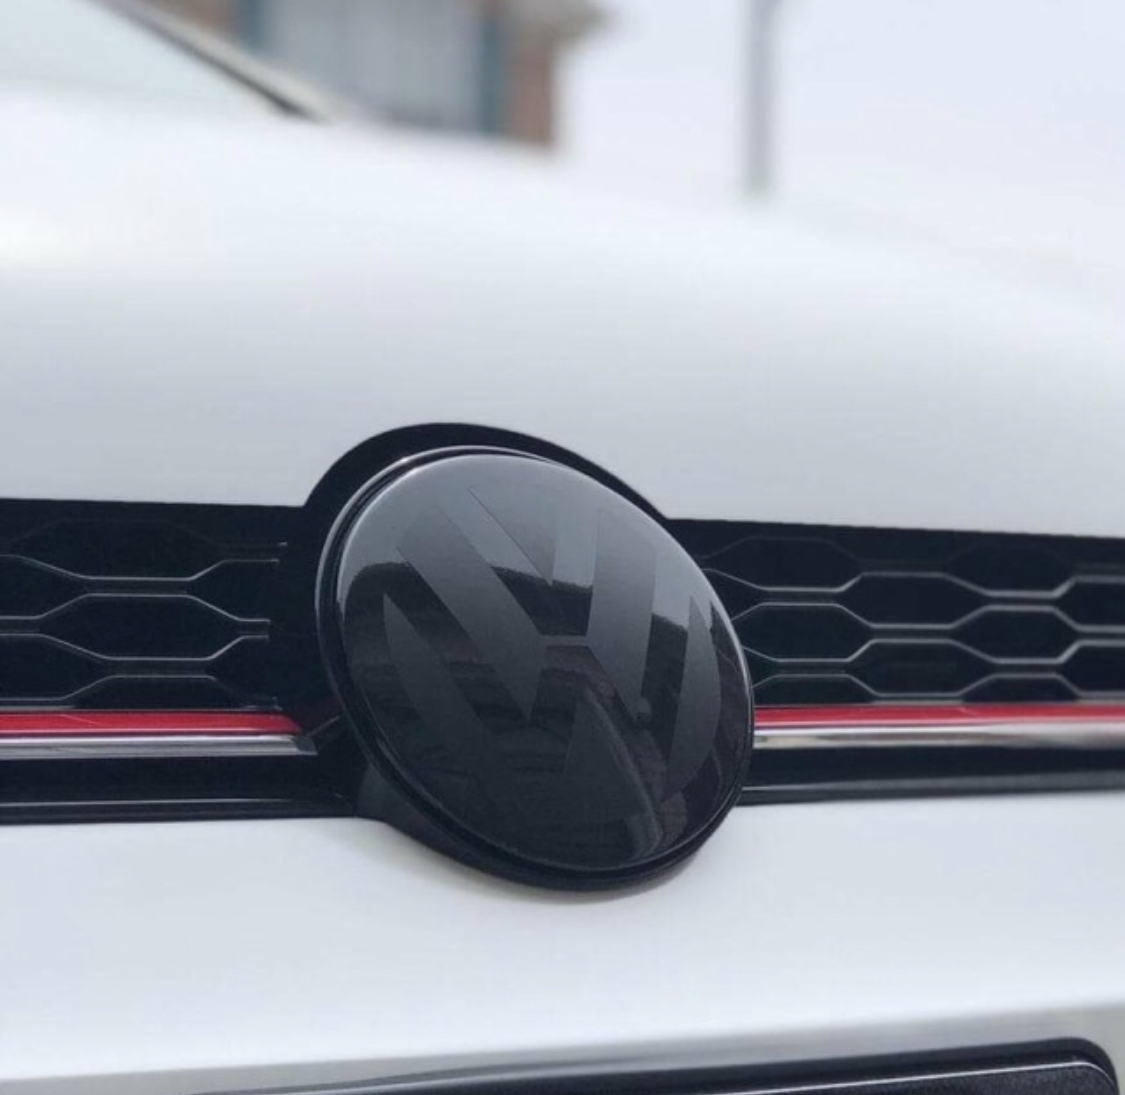 VW Embleme schwarz machen trotz ACC? - Aerodynamik Golf 7 R - Volkswagen R  Forum